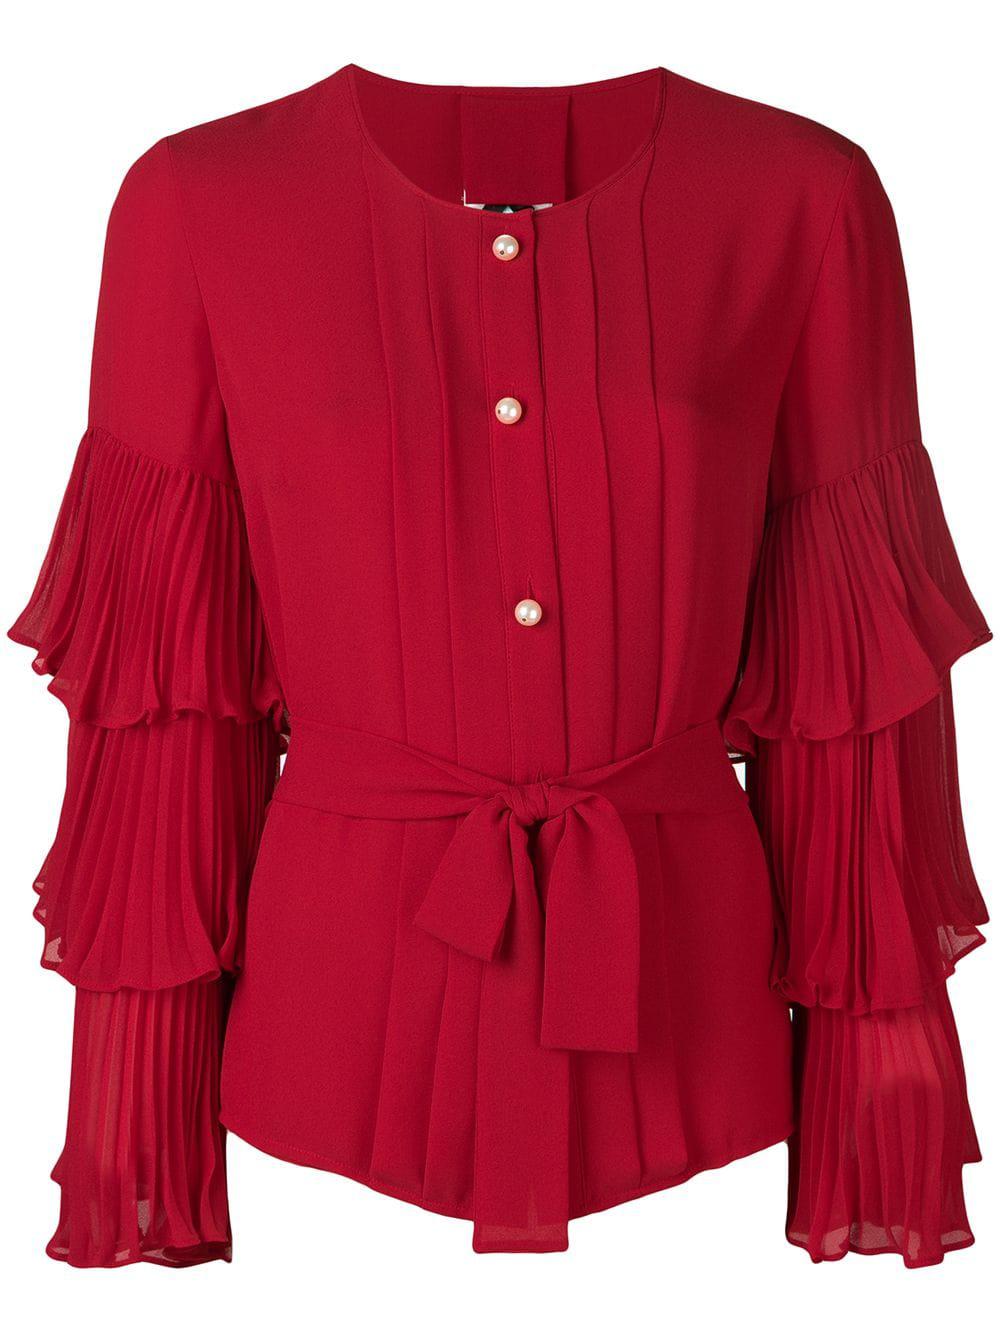 Блузки красного цвета. Блузка Edward Achour Paris. Edward Achour Paris платье. Красная блузка.